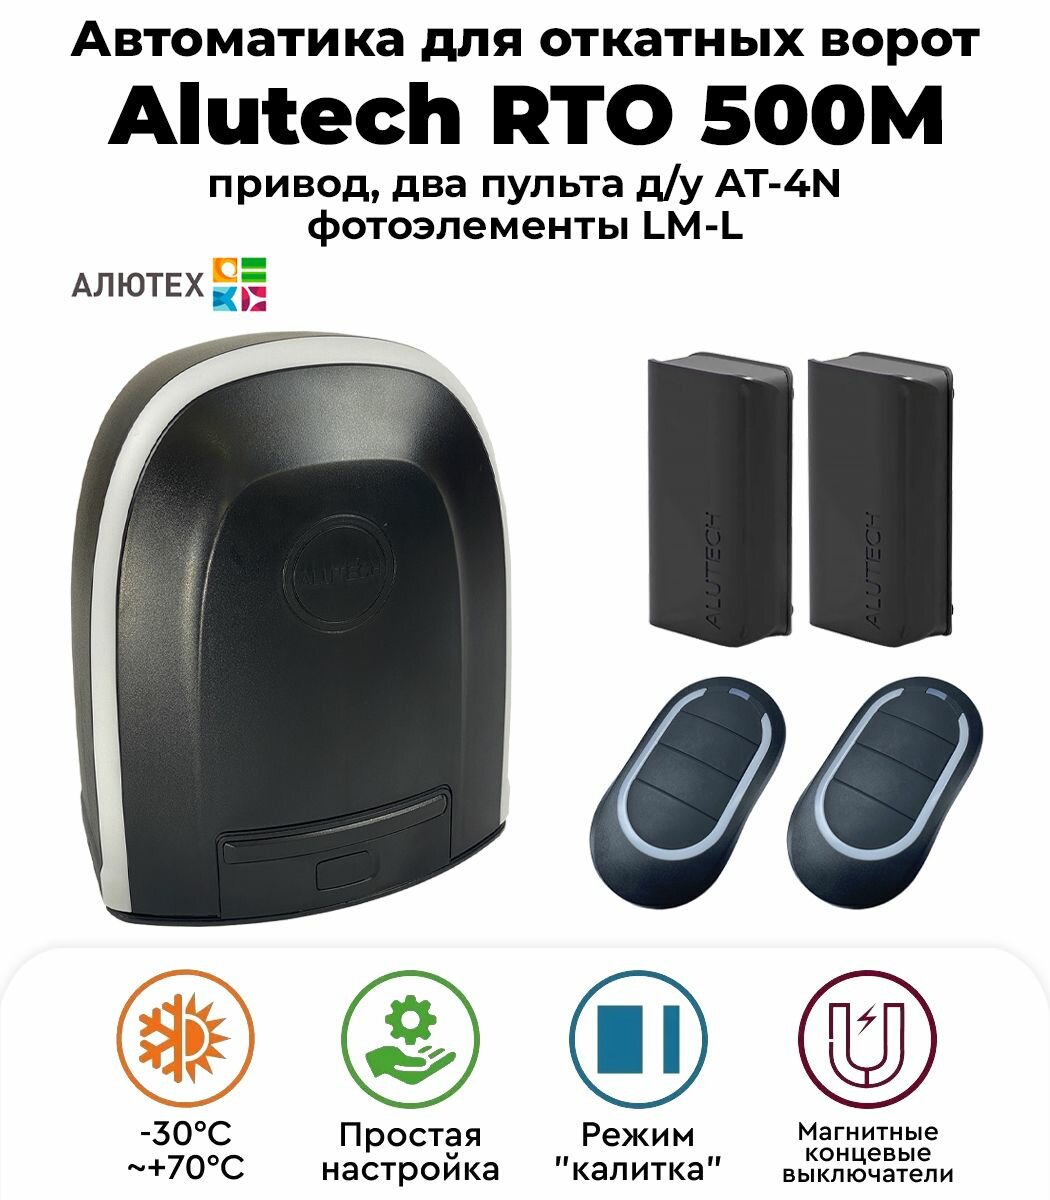 Автоматика для откатных ворот Alutech RTO-500MKIT(магнитные концевые) с фотоэлементами